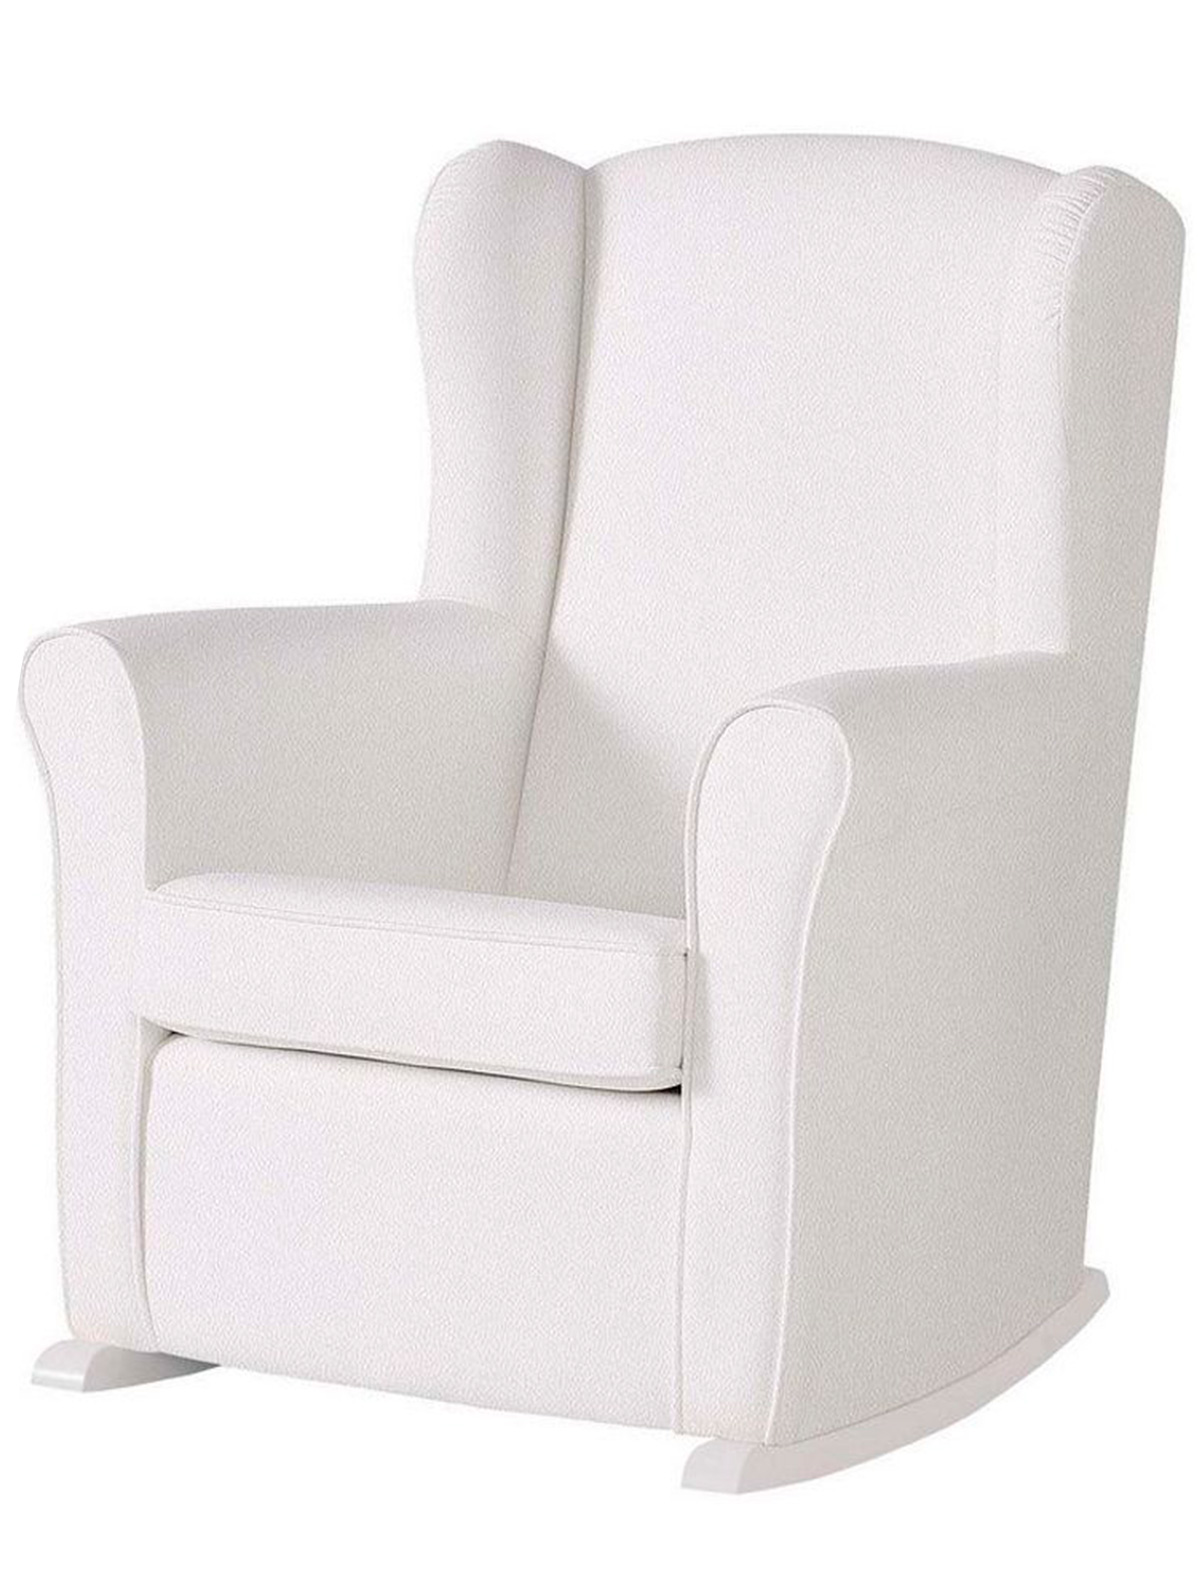 Кресло Micuna кресло для мамы micuna качалка wing flor relax искусственная кожа